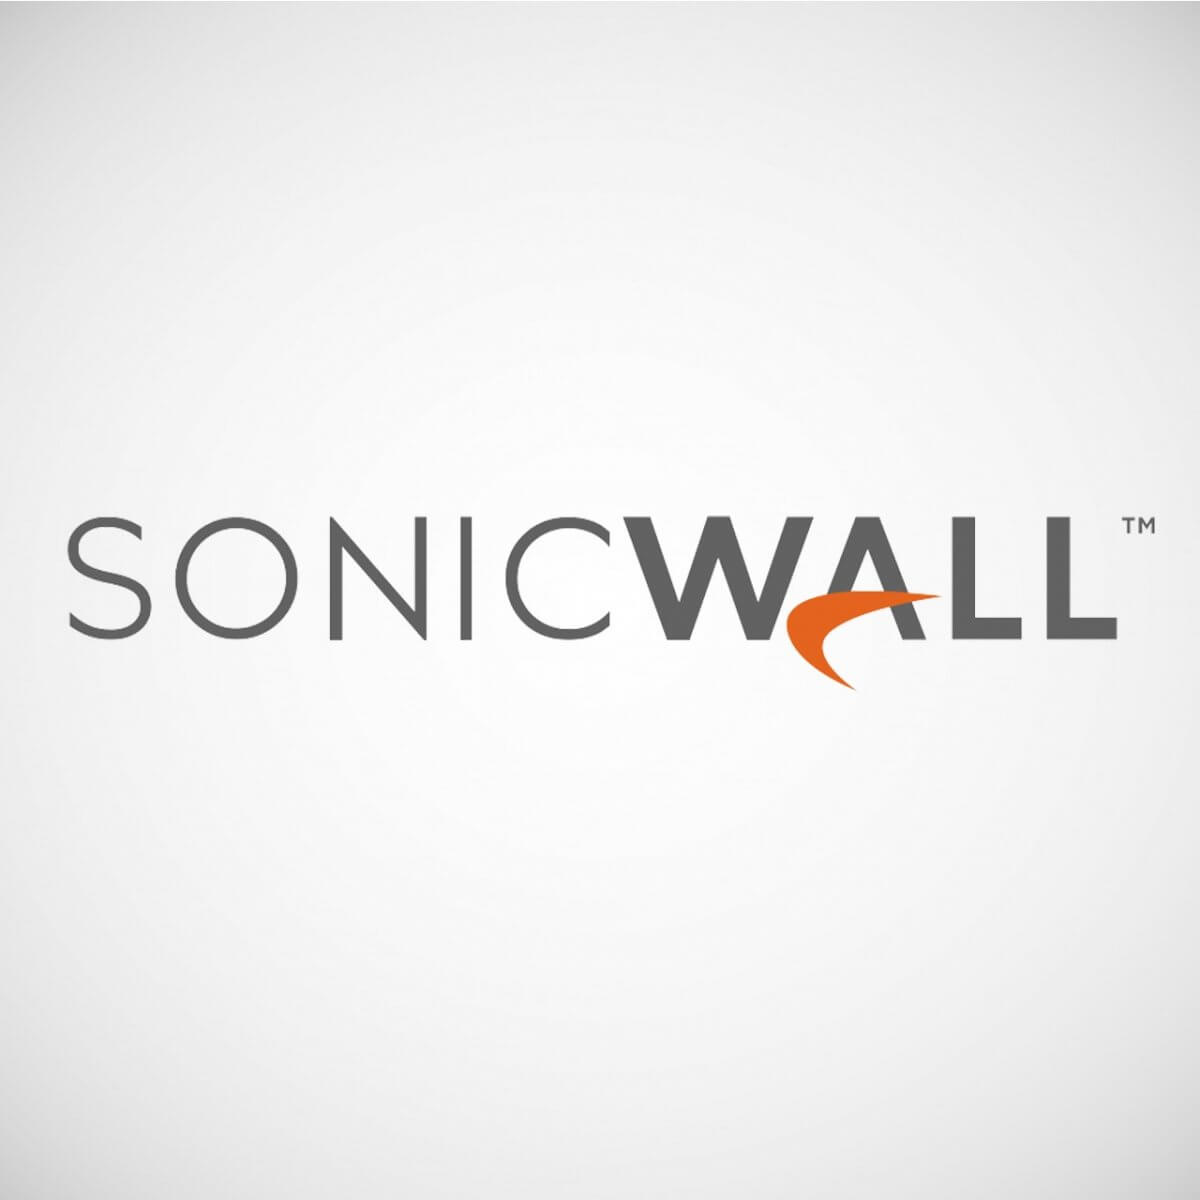 sonicwall netextender modem not found